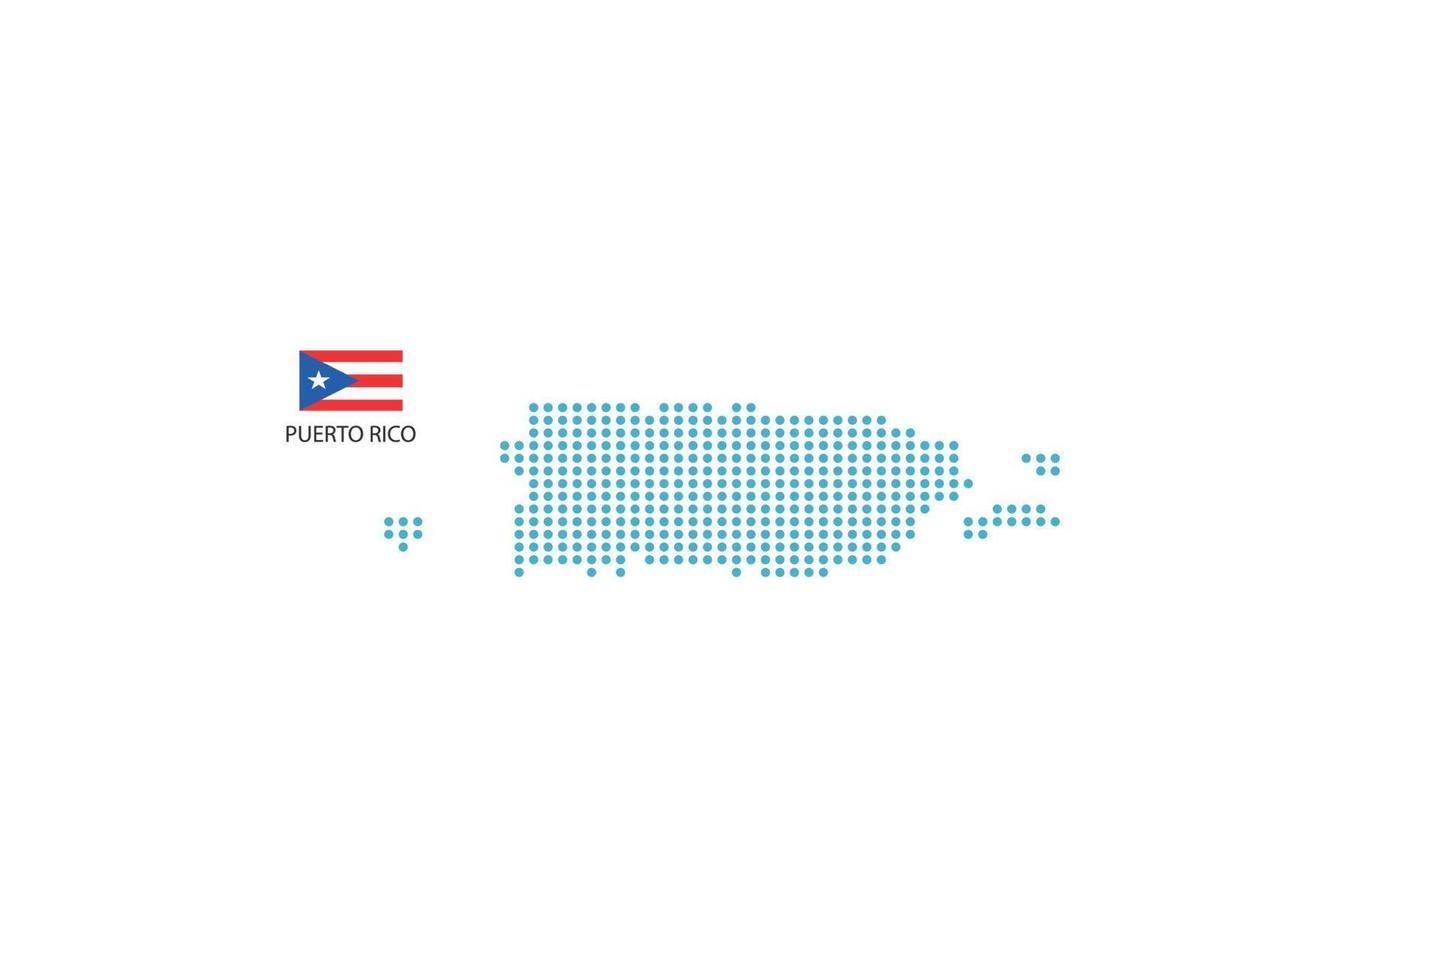 puerto rico kaart ontwerp blauw cirkel, wit achtergrond met puerto rico vlag. vector